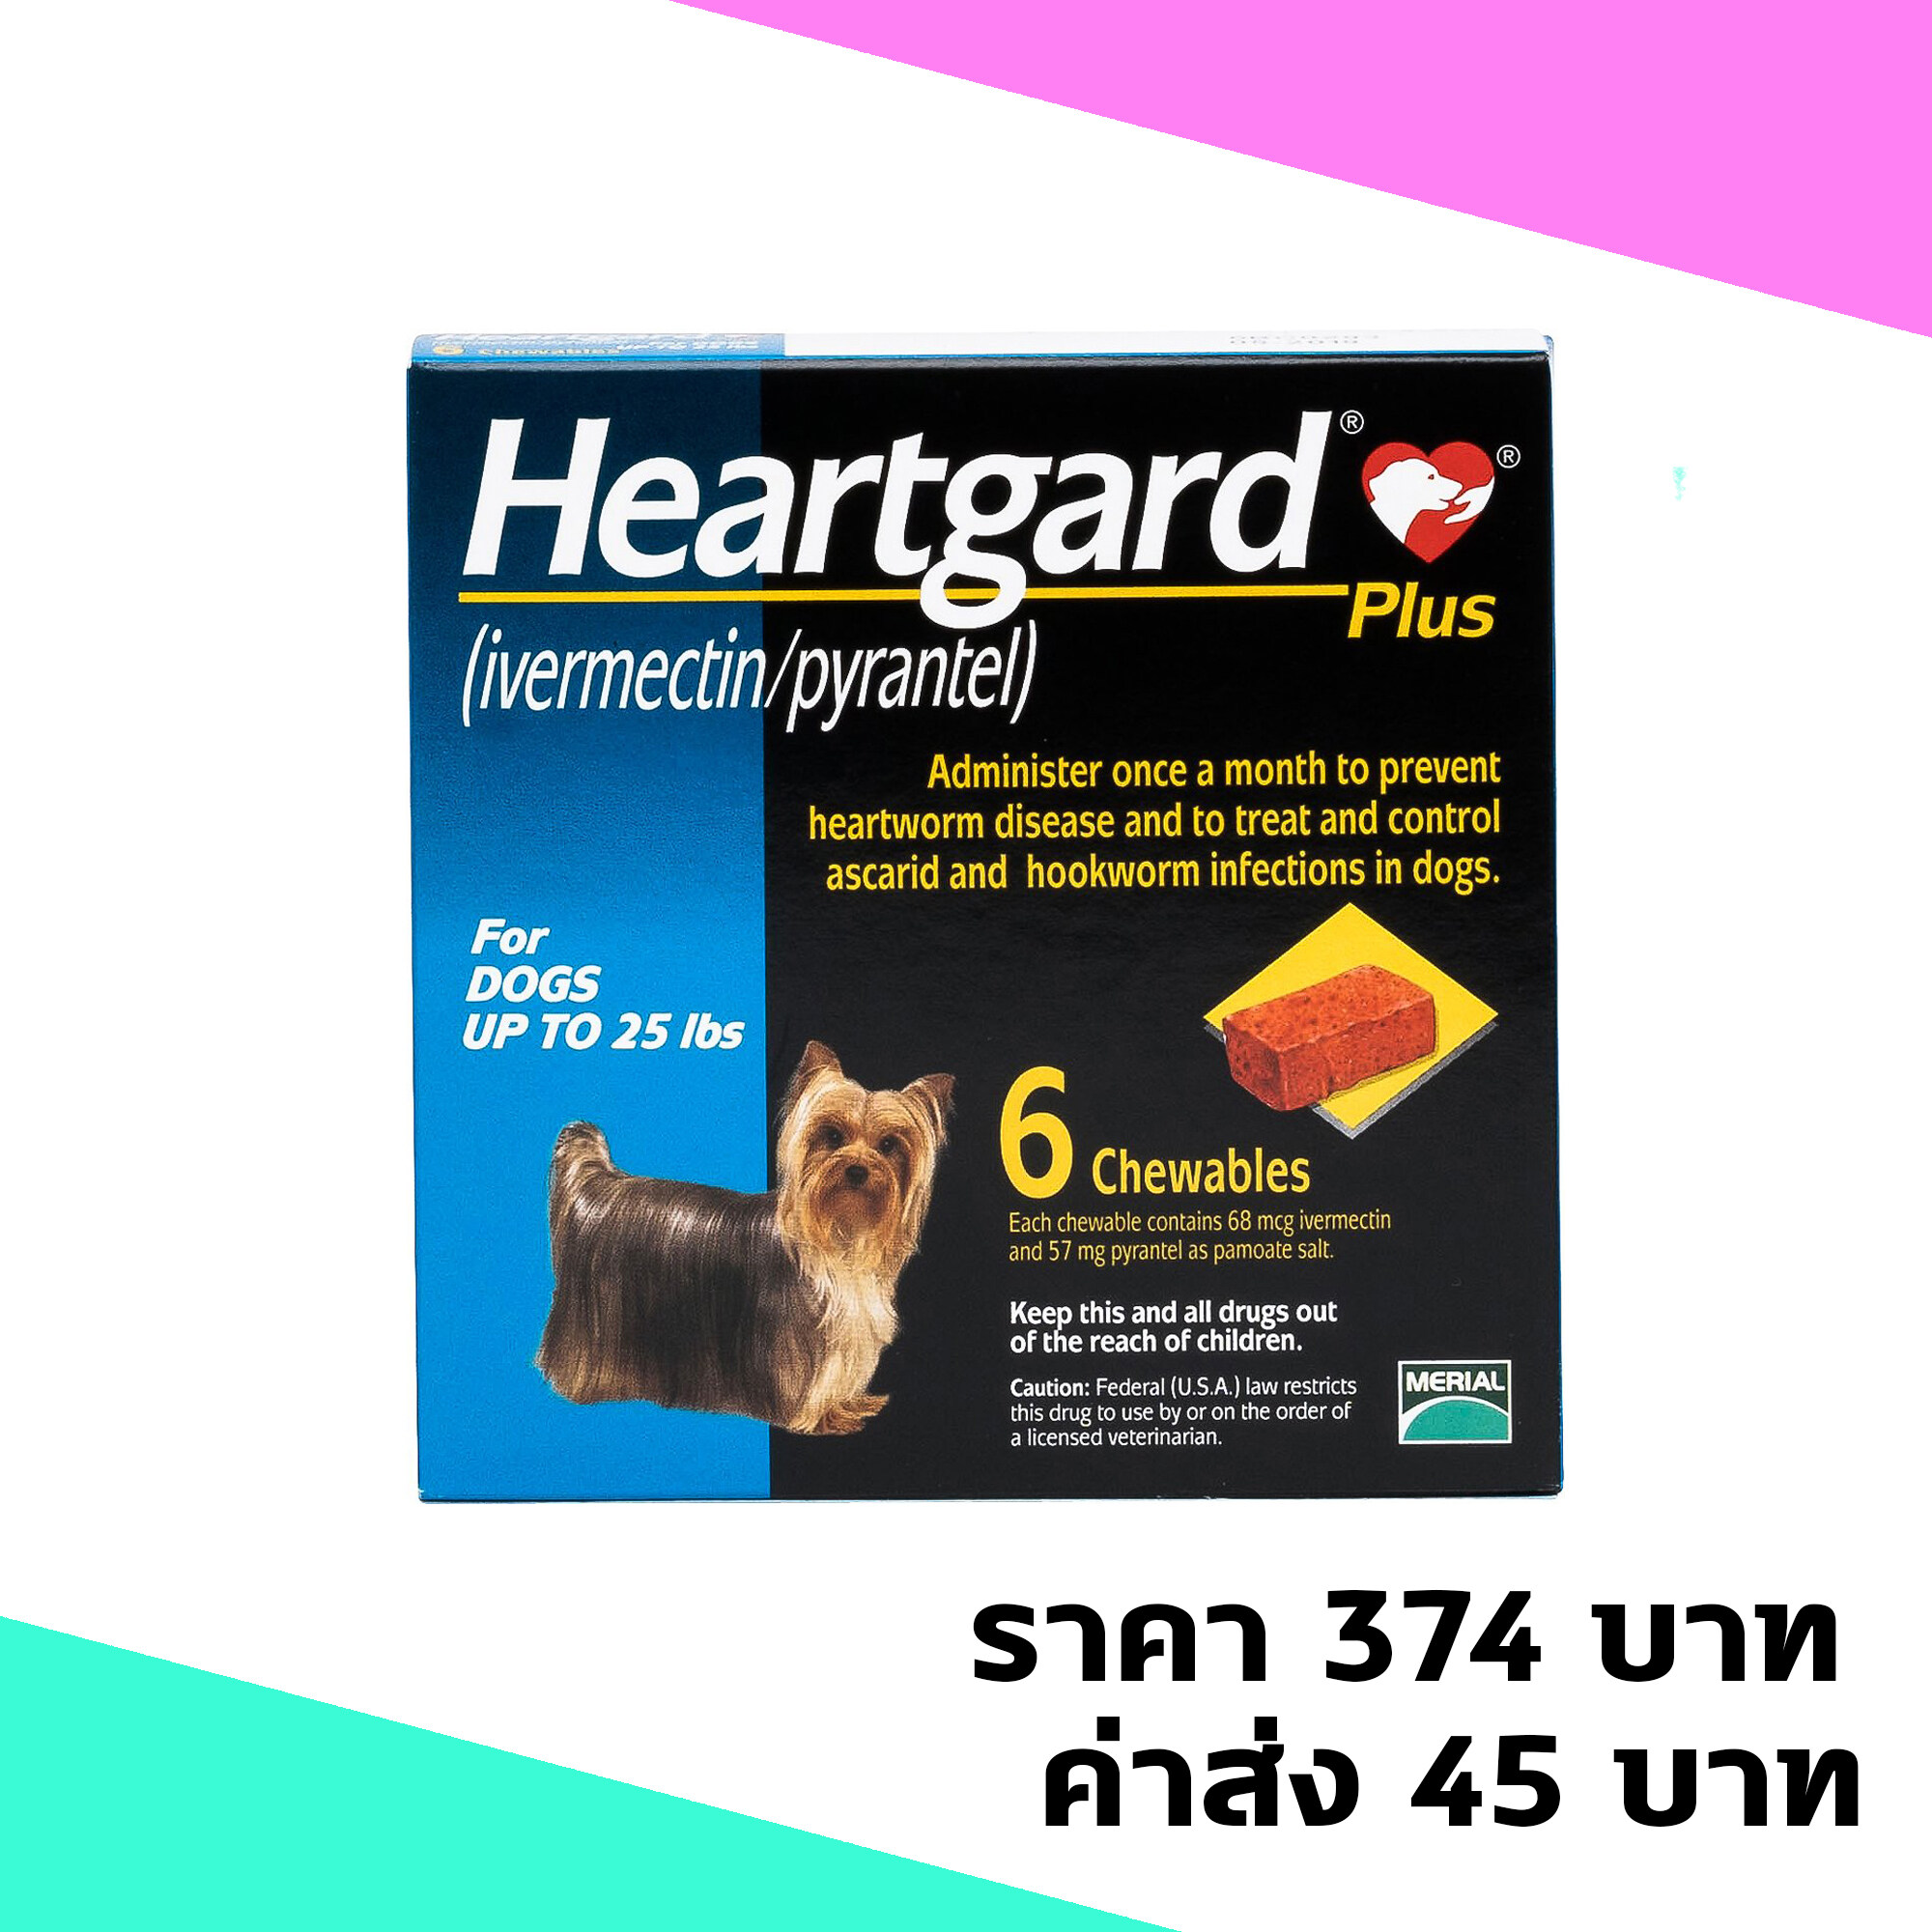 Heartgard Plus For Dogs up to 25 lbs ฮาร์ทการ์ด พลัส ใช้สำหรับหนอนหัวใจ สำหรับสุนัขหนัก 0-12 กิโลกรัม จำนวน 6 เม็ด บรรจุ 1 กล่อง